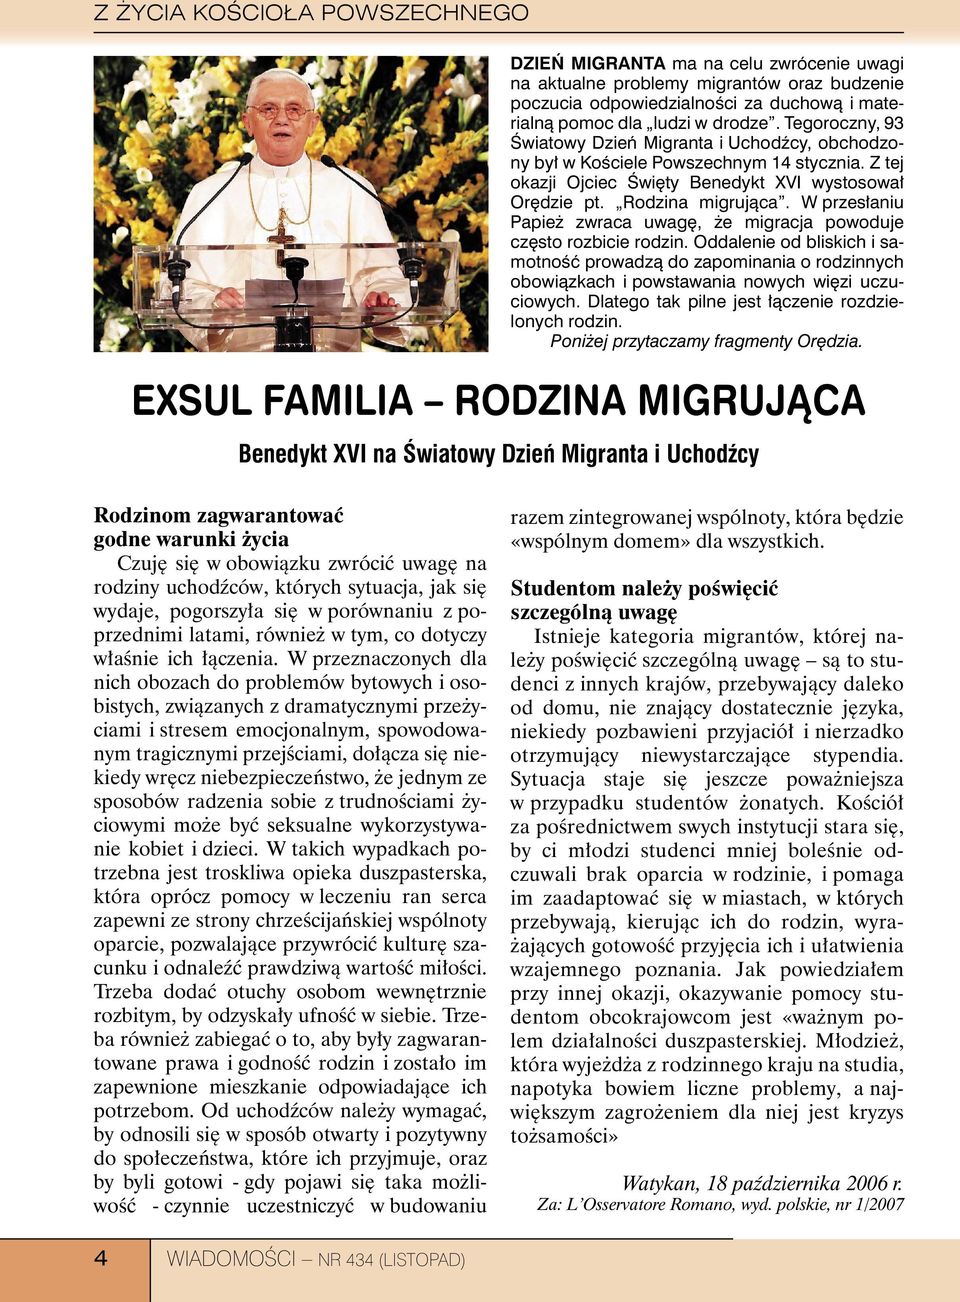 W przesłaniu Papież zwraca uwagę, że migracja powoduje często rozbicie rodzin.